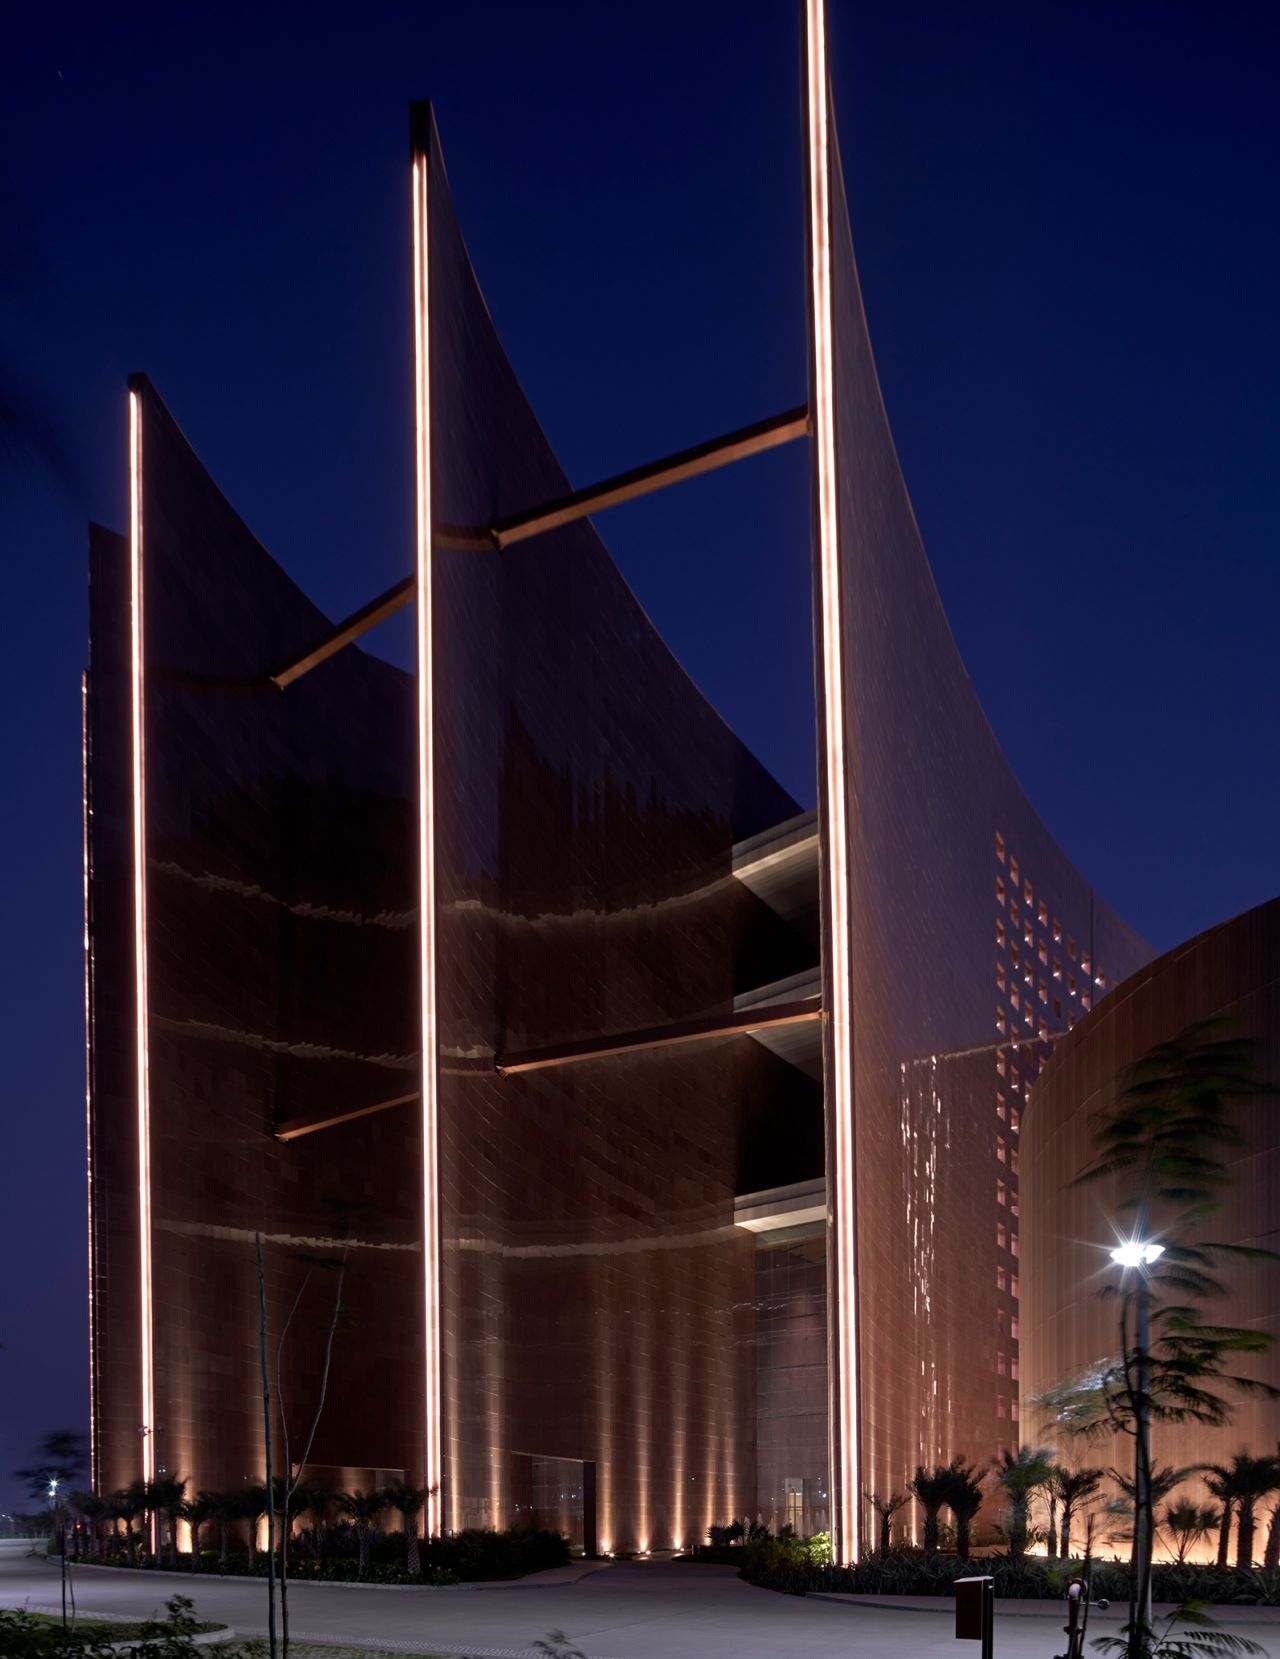 フレア形状は建物全体に卓越風を通すように設計されている/Edmund Sumner